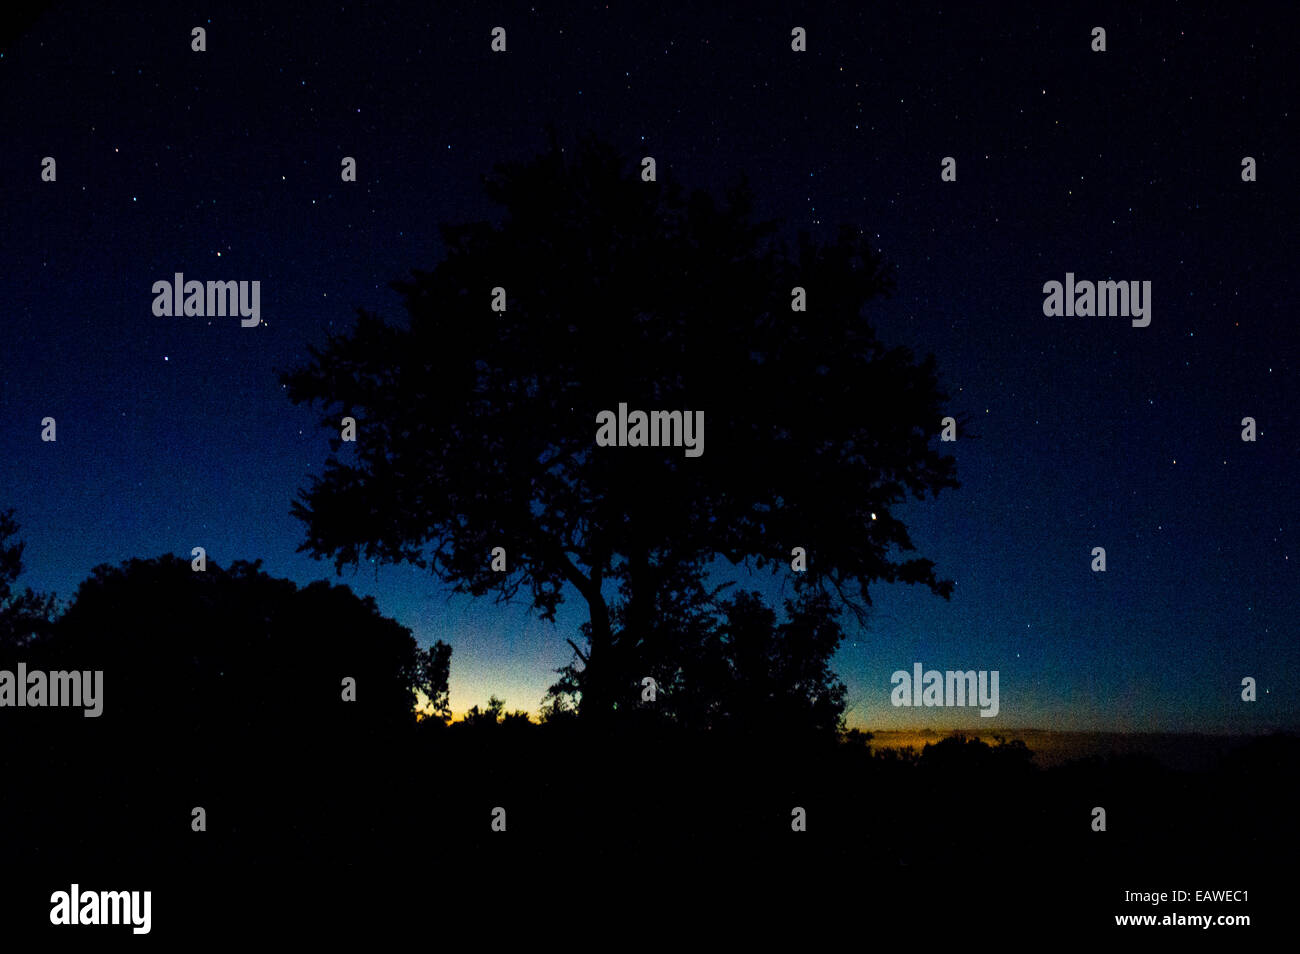 Ein klarer Himmel voller Sterne Silhouetten einen Baum auf einer Aue-Feuchtgebiet. Stockfoto